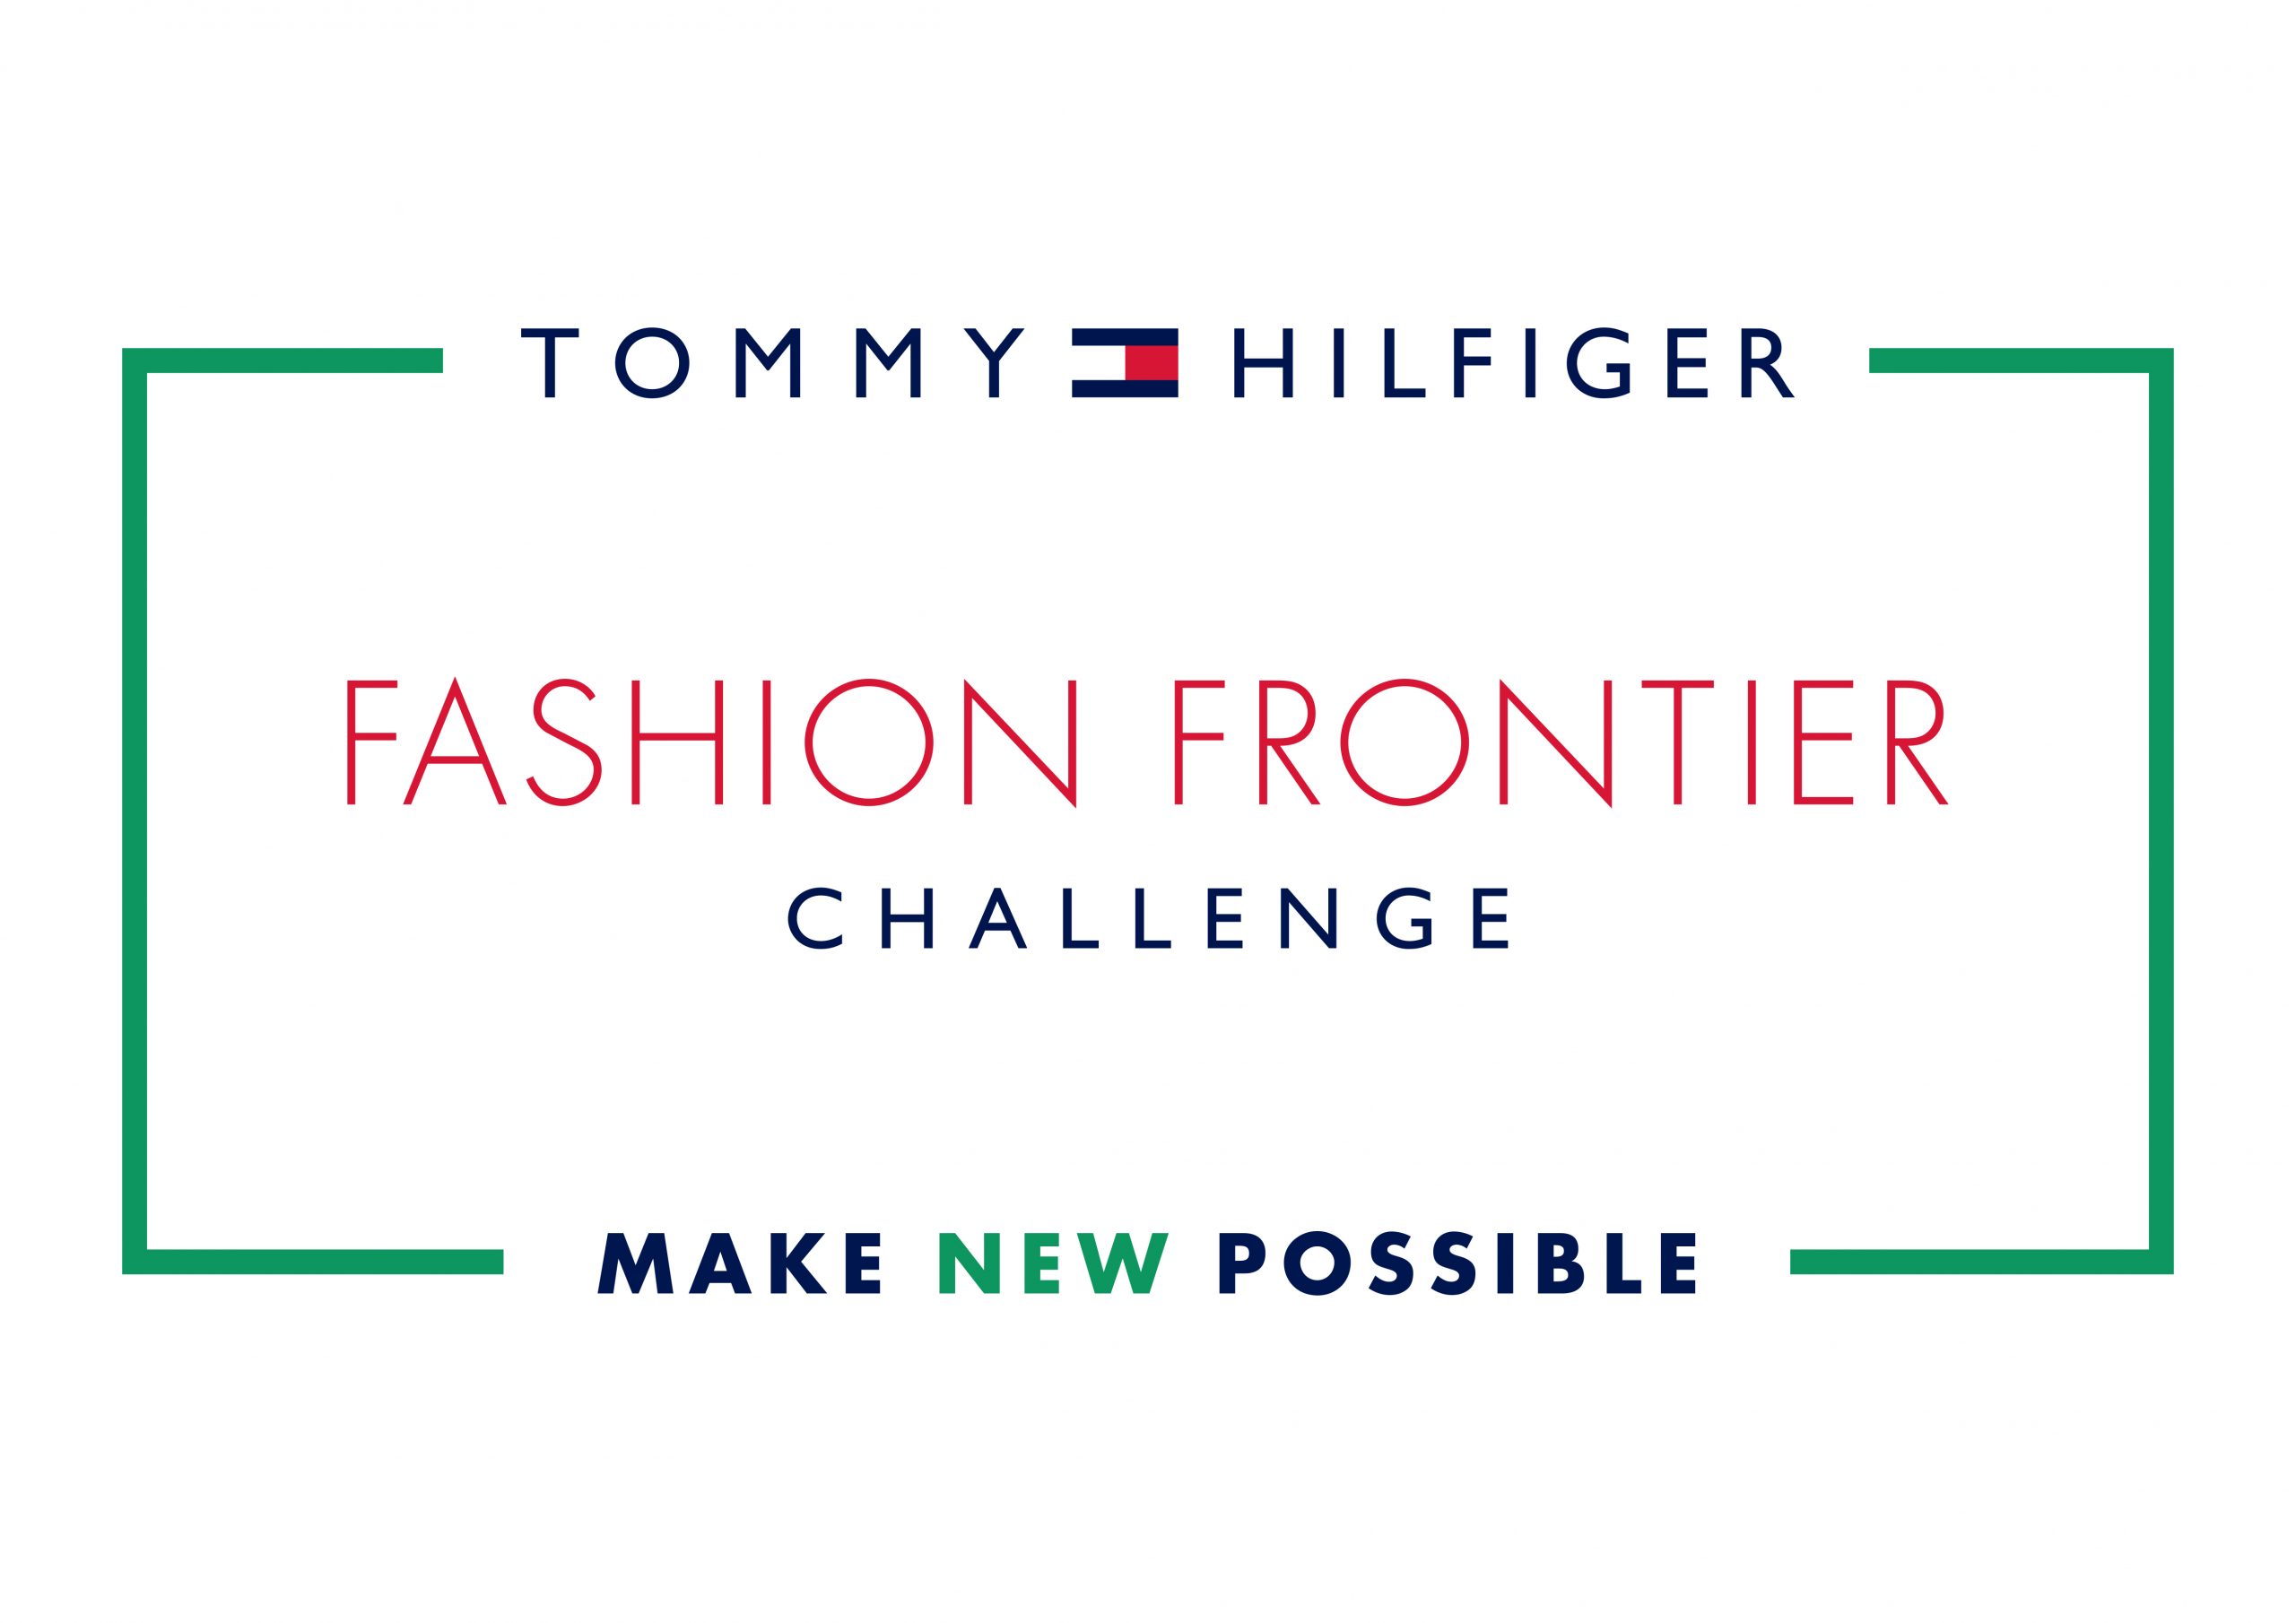 Η 4η πρόκληση TOMMY HILFIGER FASHION FRONTIER CHALLENGE καλεί τους κοινωνικούς επιχειρηματίες να επιταχύνουν την ενσωμάτωση τους στη μόδα.